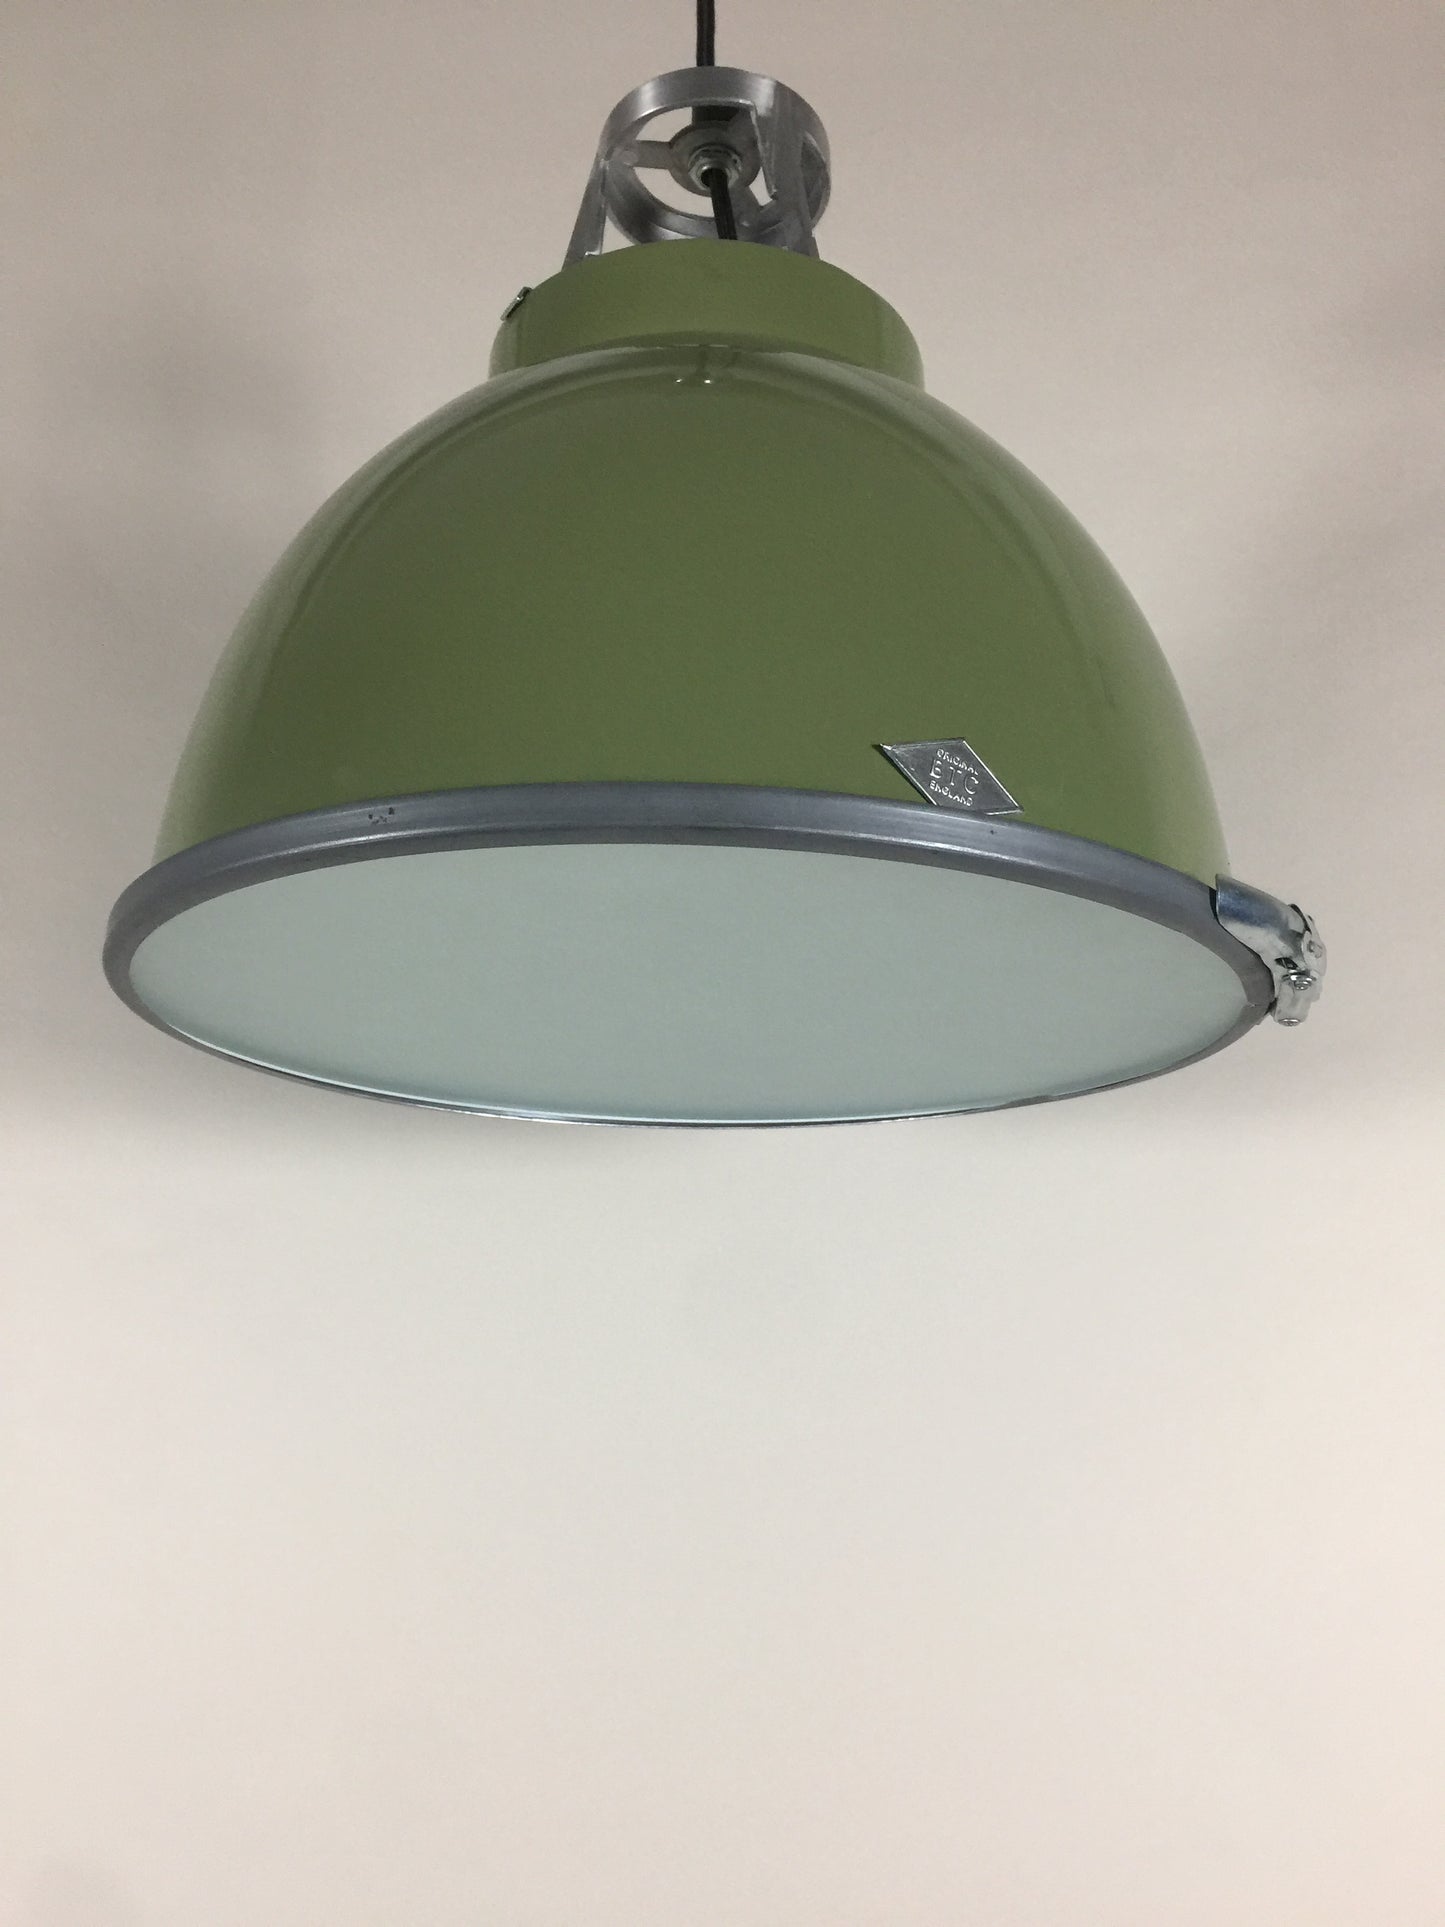 Original BTC Lampe - Titan in schöner grüner Farbe mit sandgestrahltem Glas